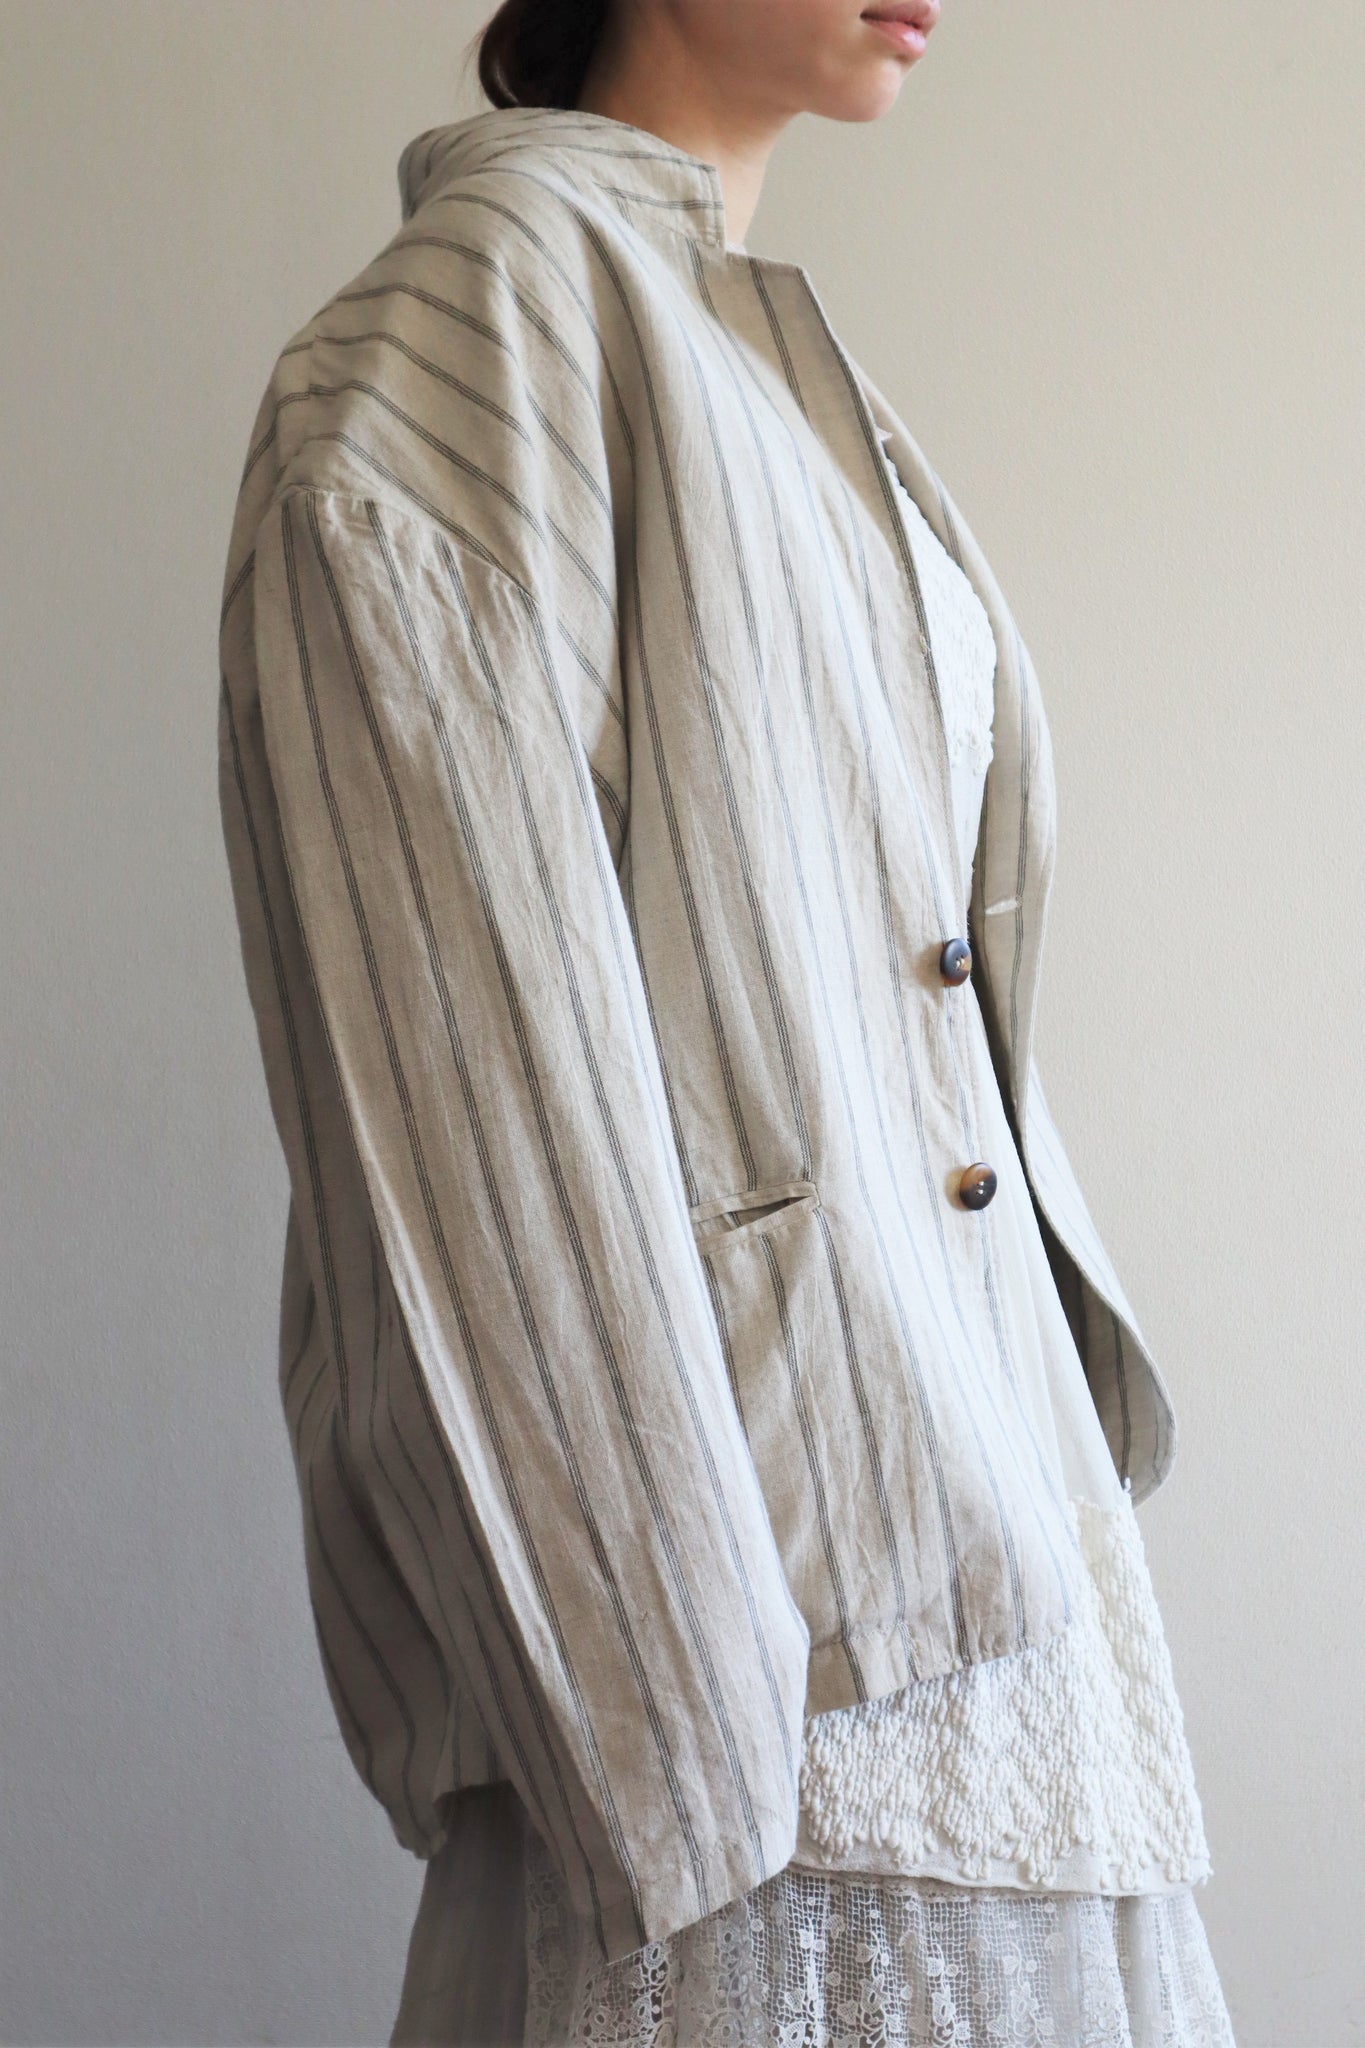 90s Italian Striped Linen Jacket